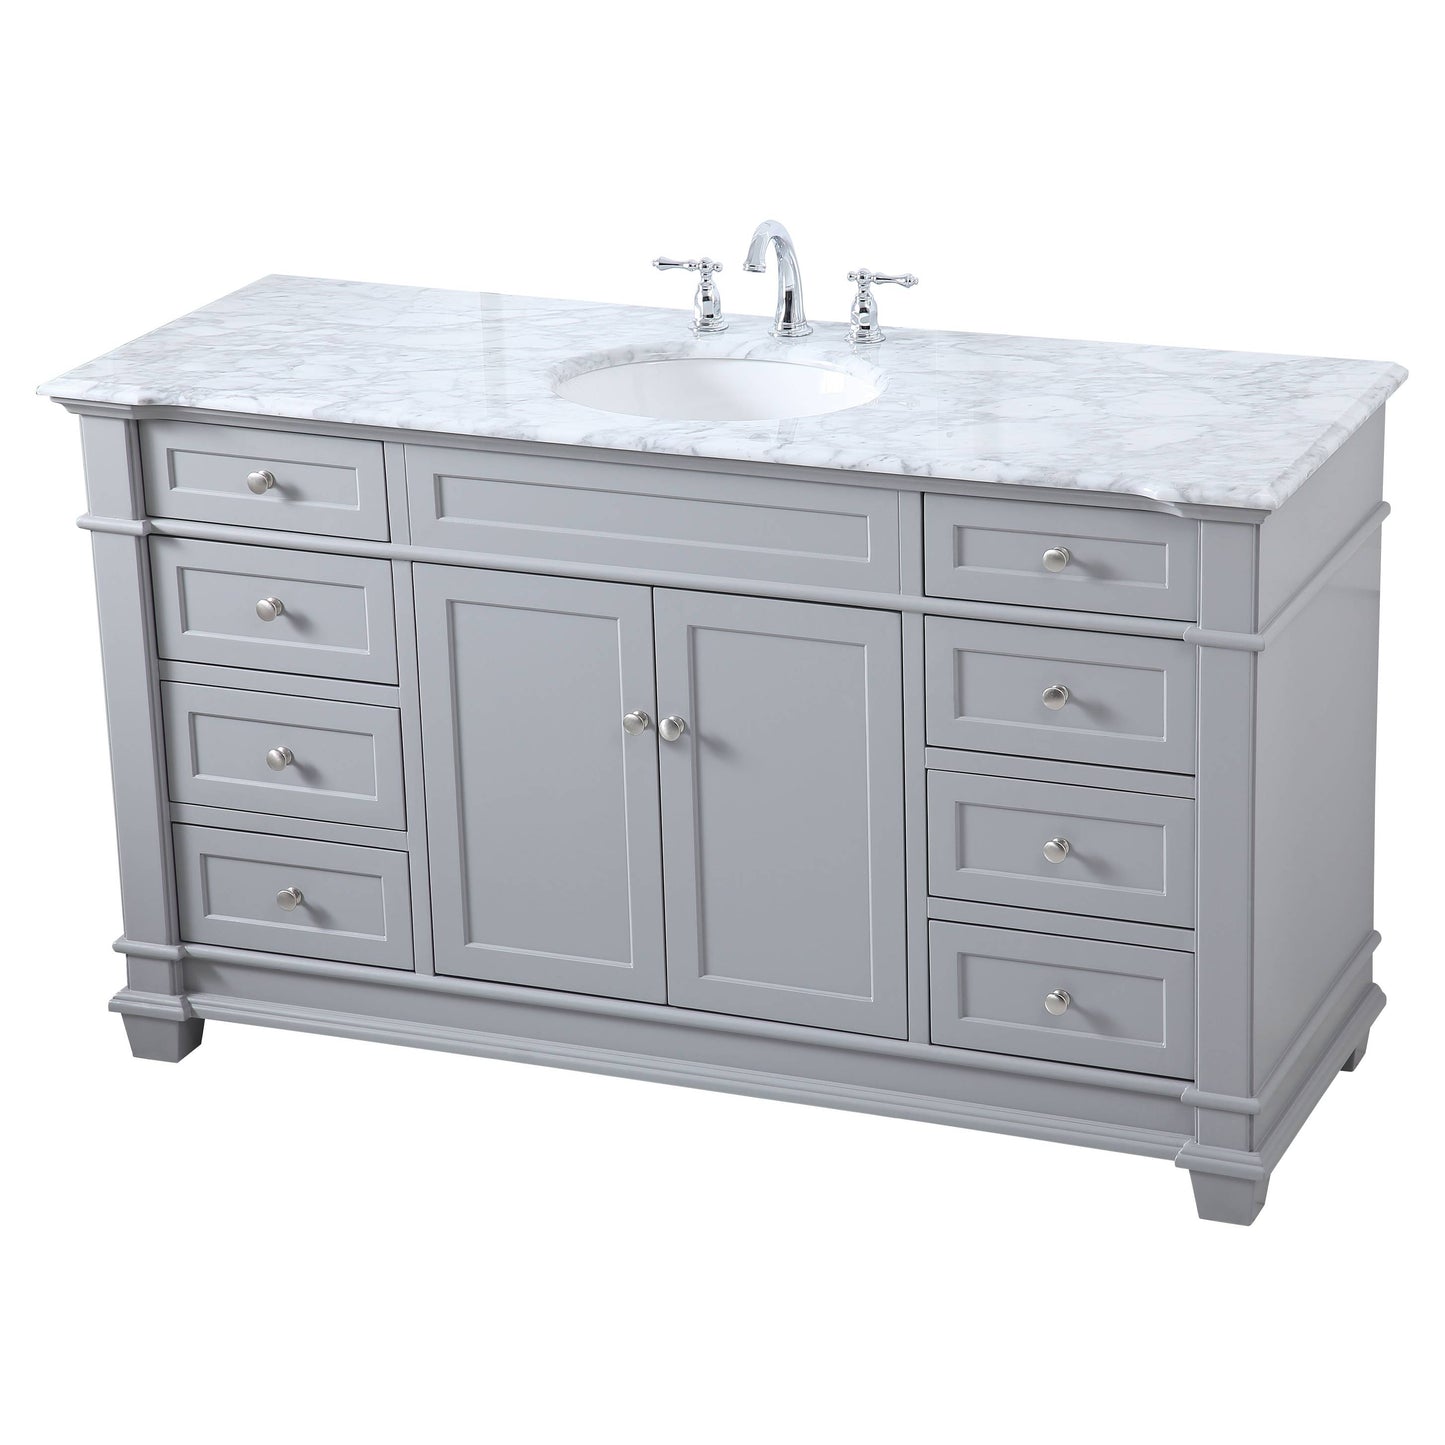 VF50060GR 60" Single Bathroom Vanity Set in Grey